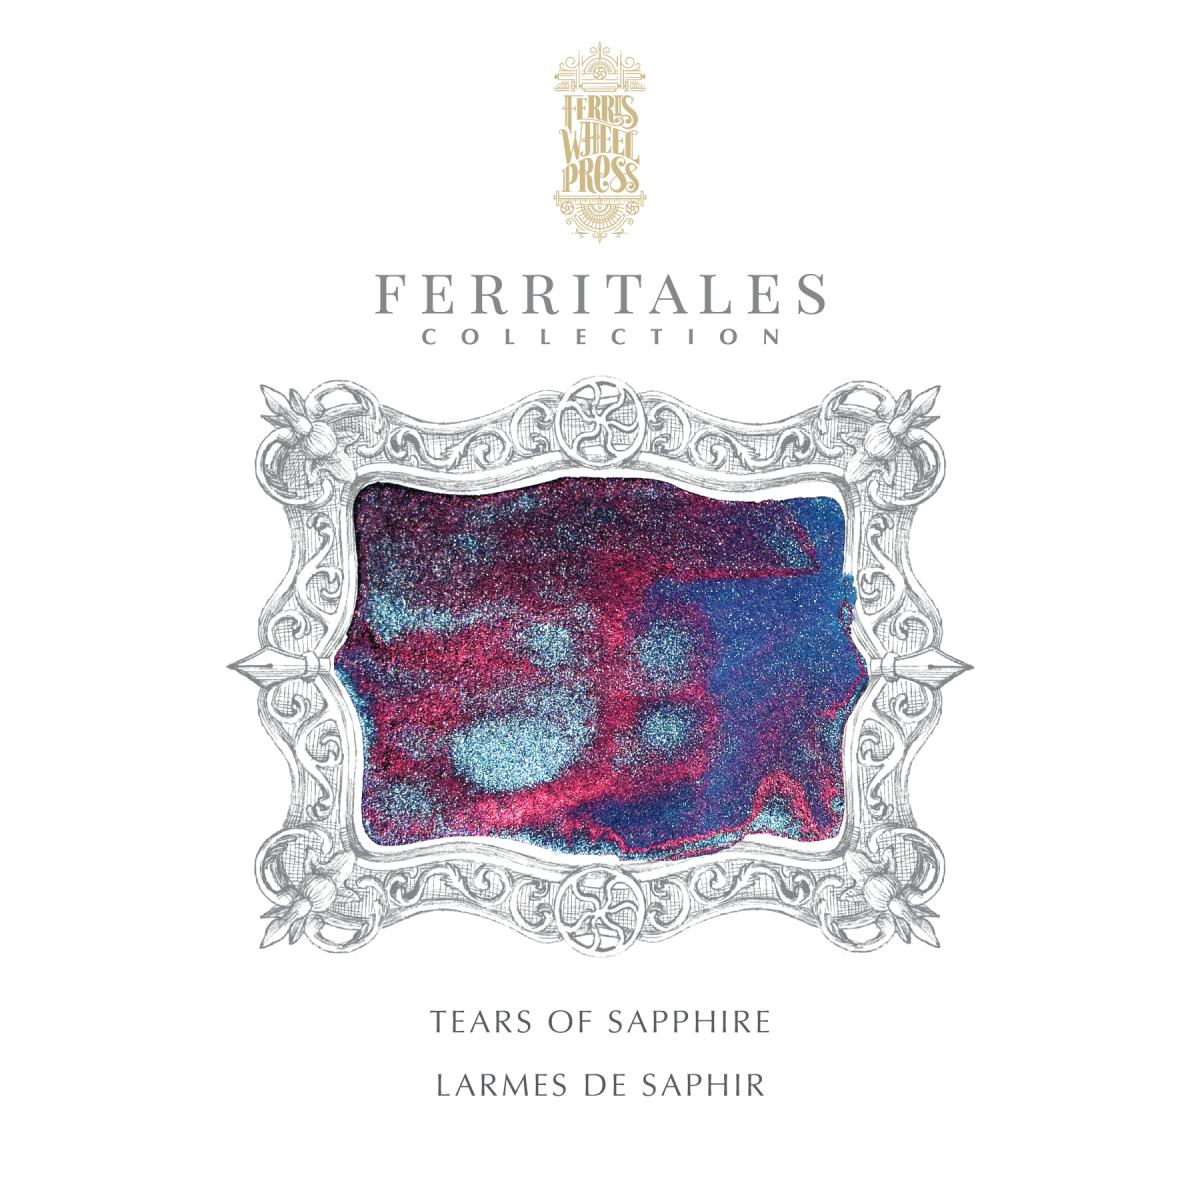 Ferris Wheel Press - Ferritales Ink - Tears of Sapphire, 20 ml